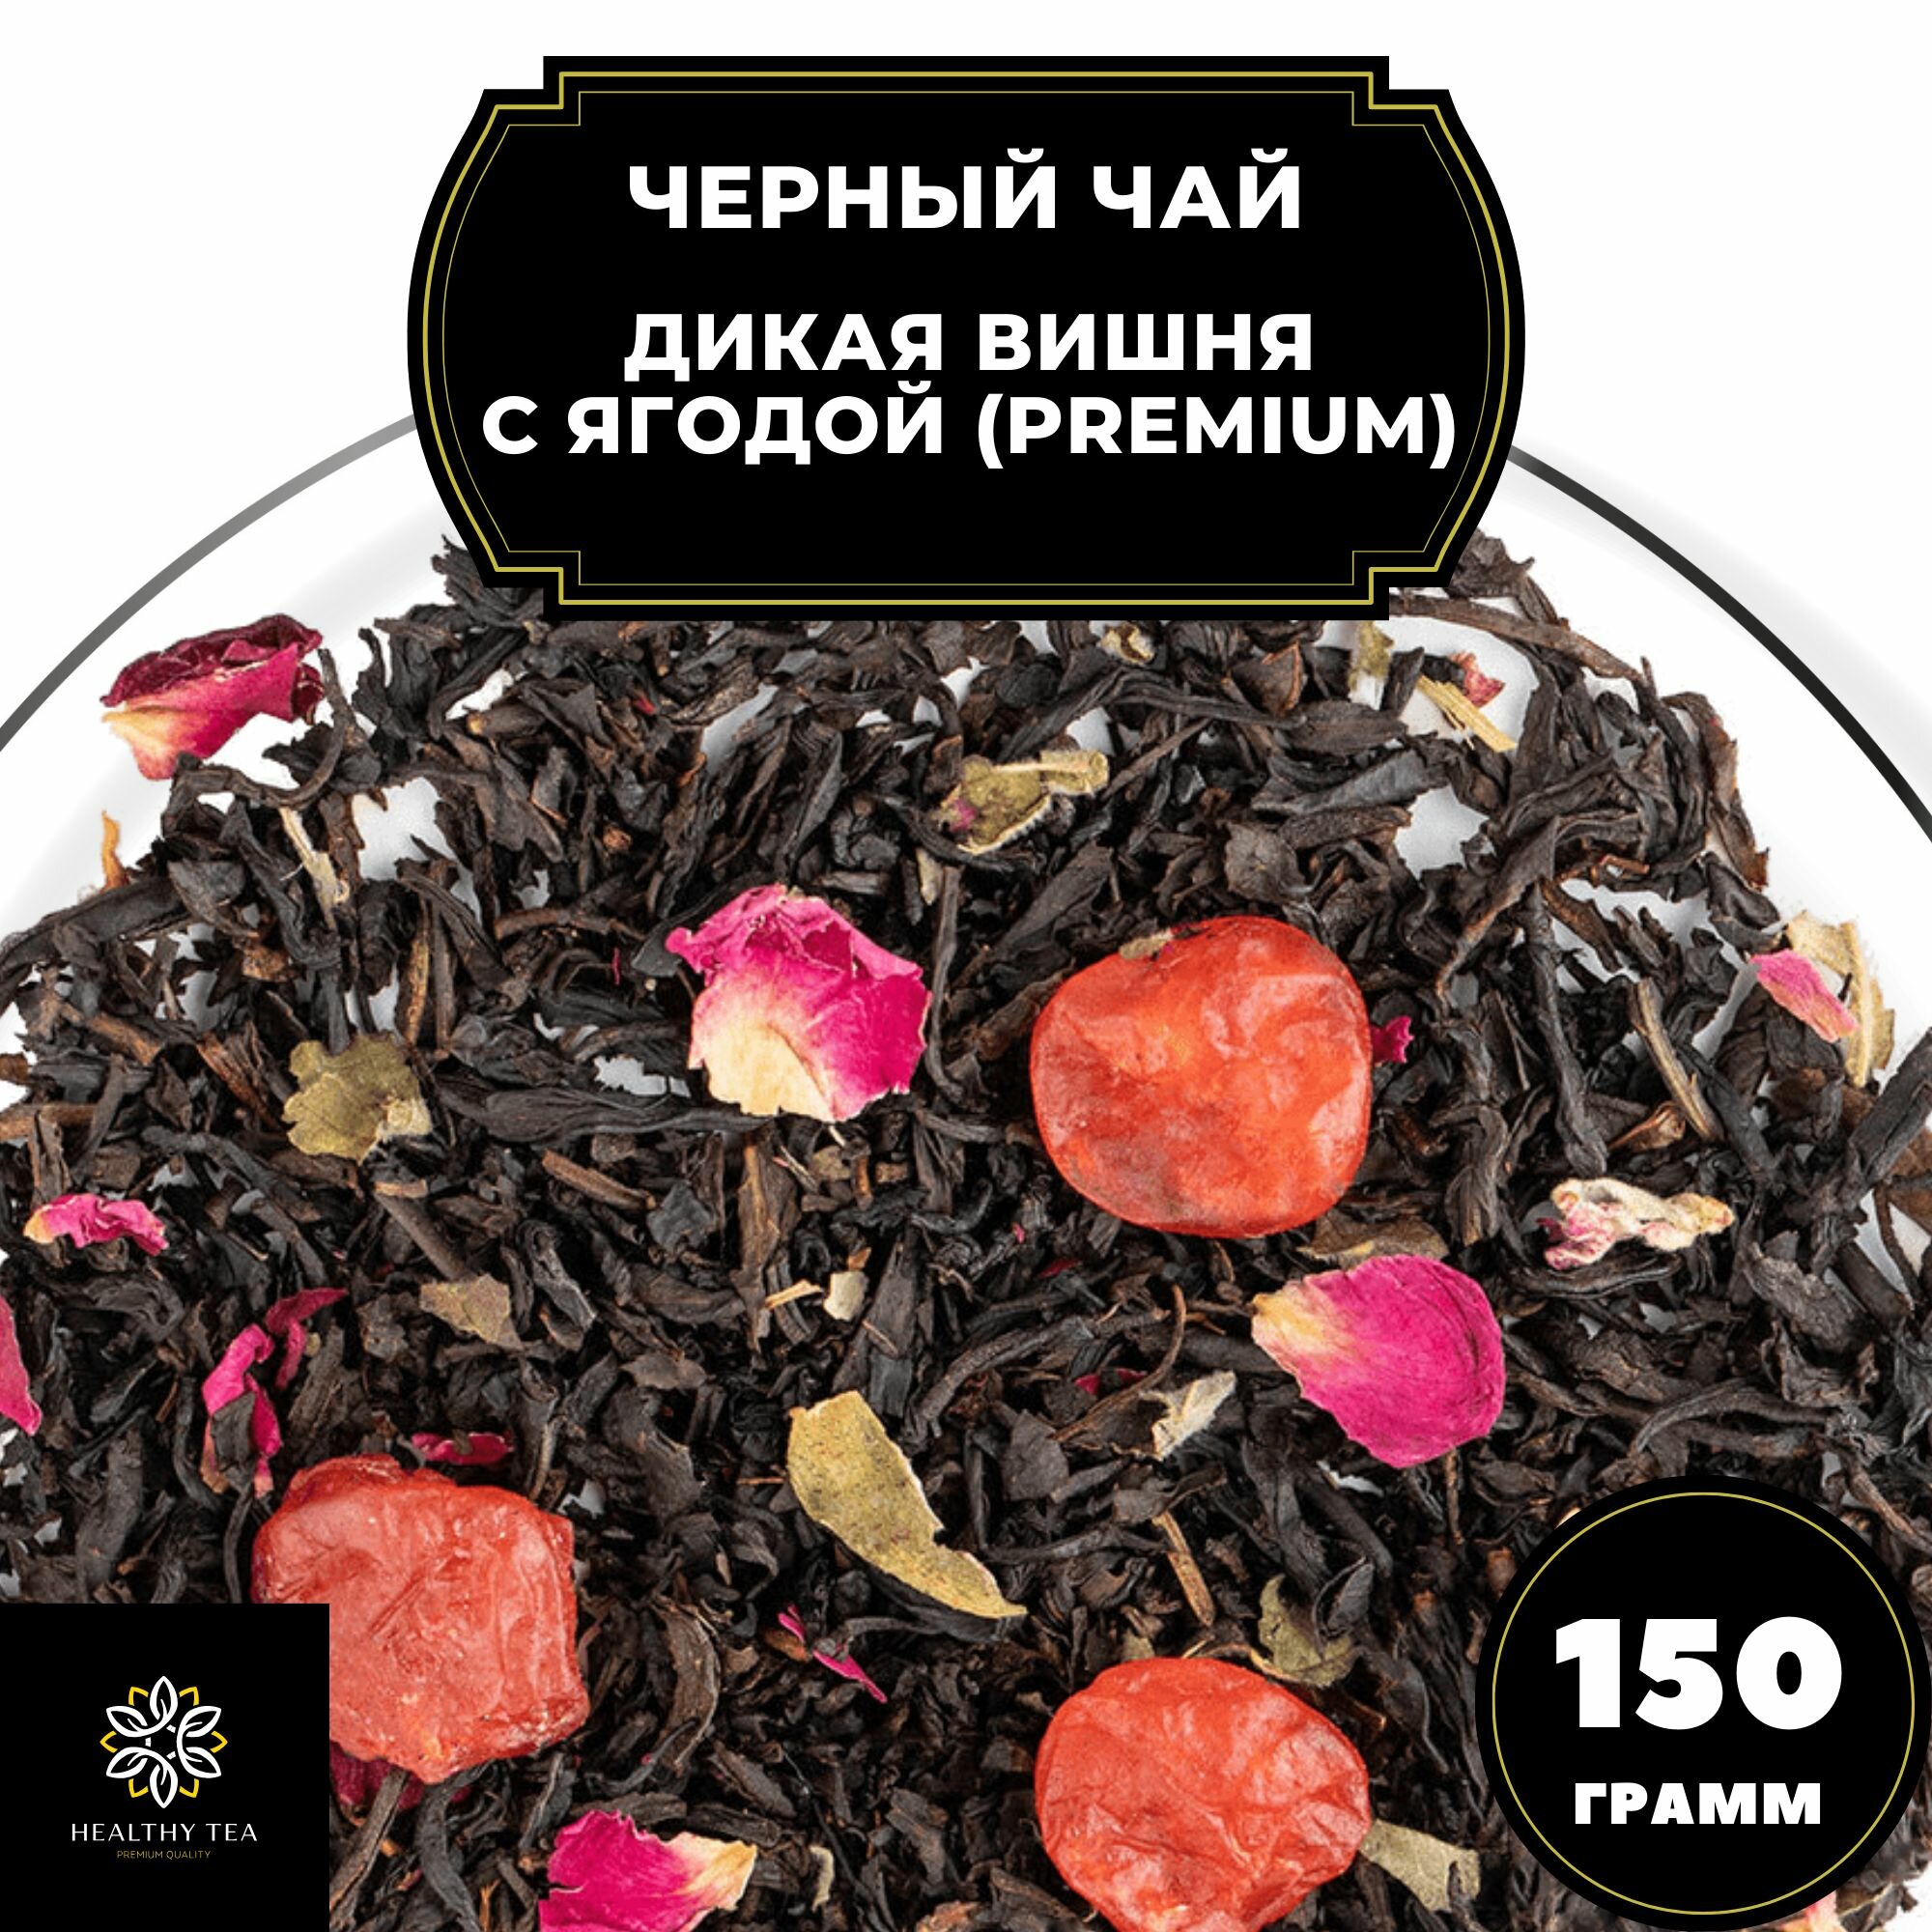 Китайский Черный чай с вишней и розой "Дикая вишня с ягодой" (Premium) Полезный чай / HEALTHY TEA, 150 гр